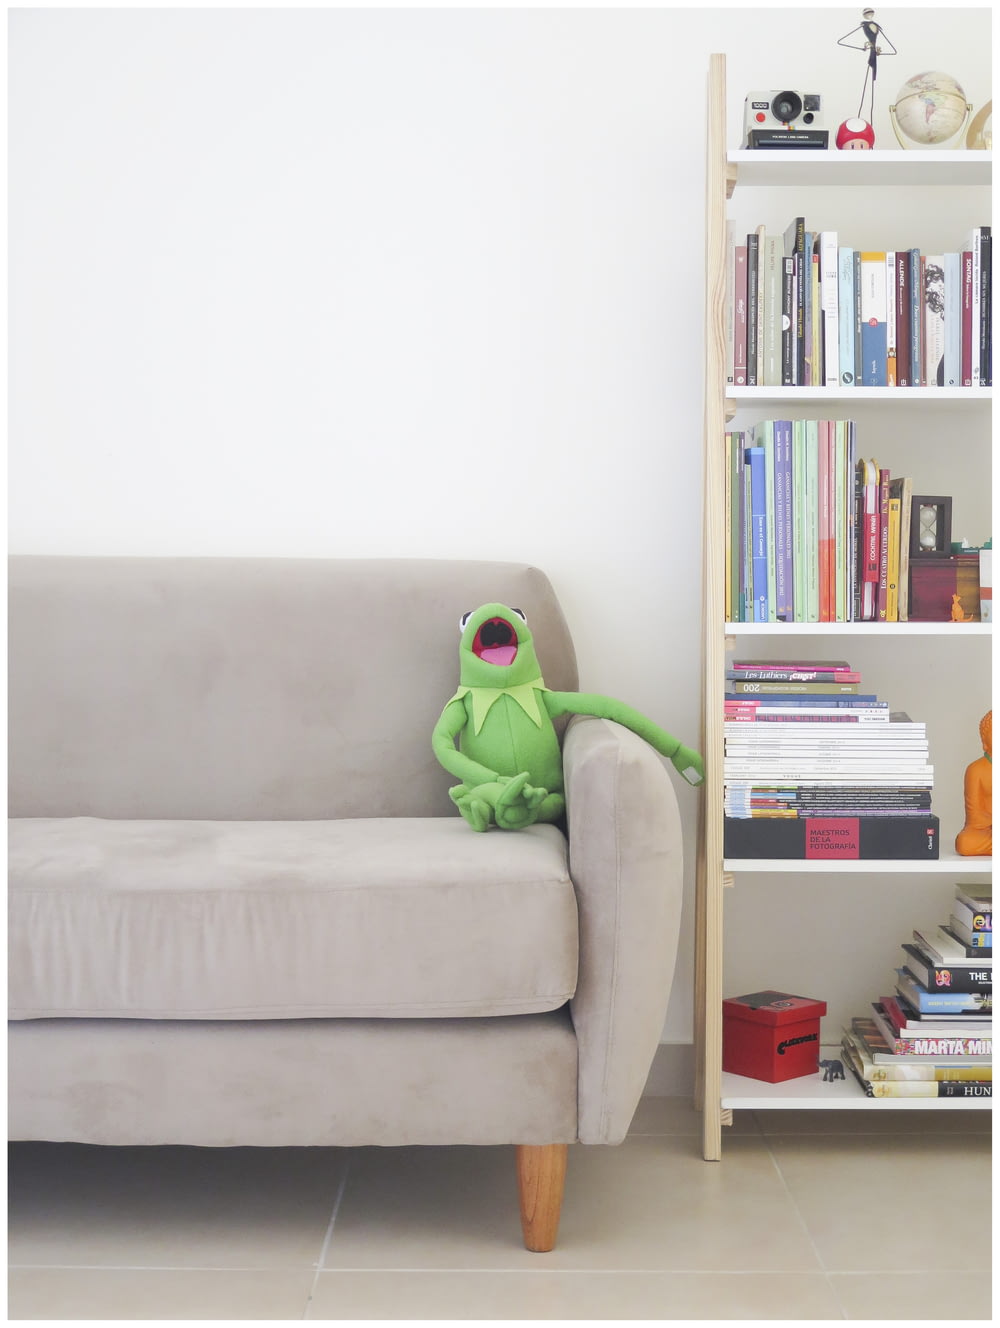 Il peluche dei Muppets Kermit su divano grigio